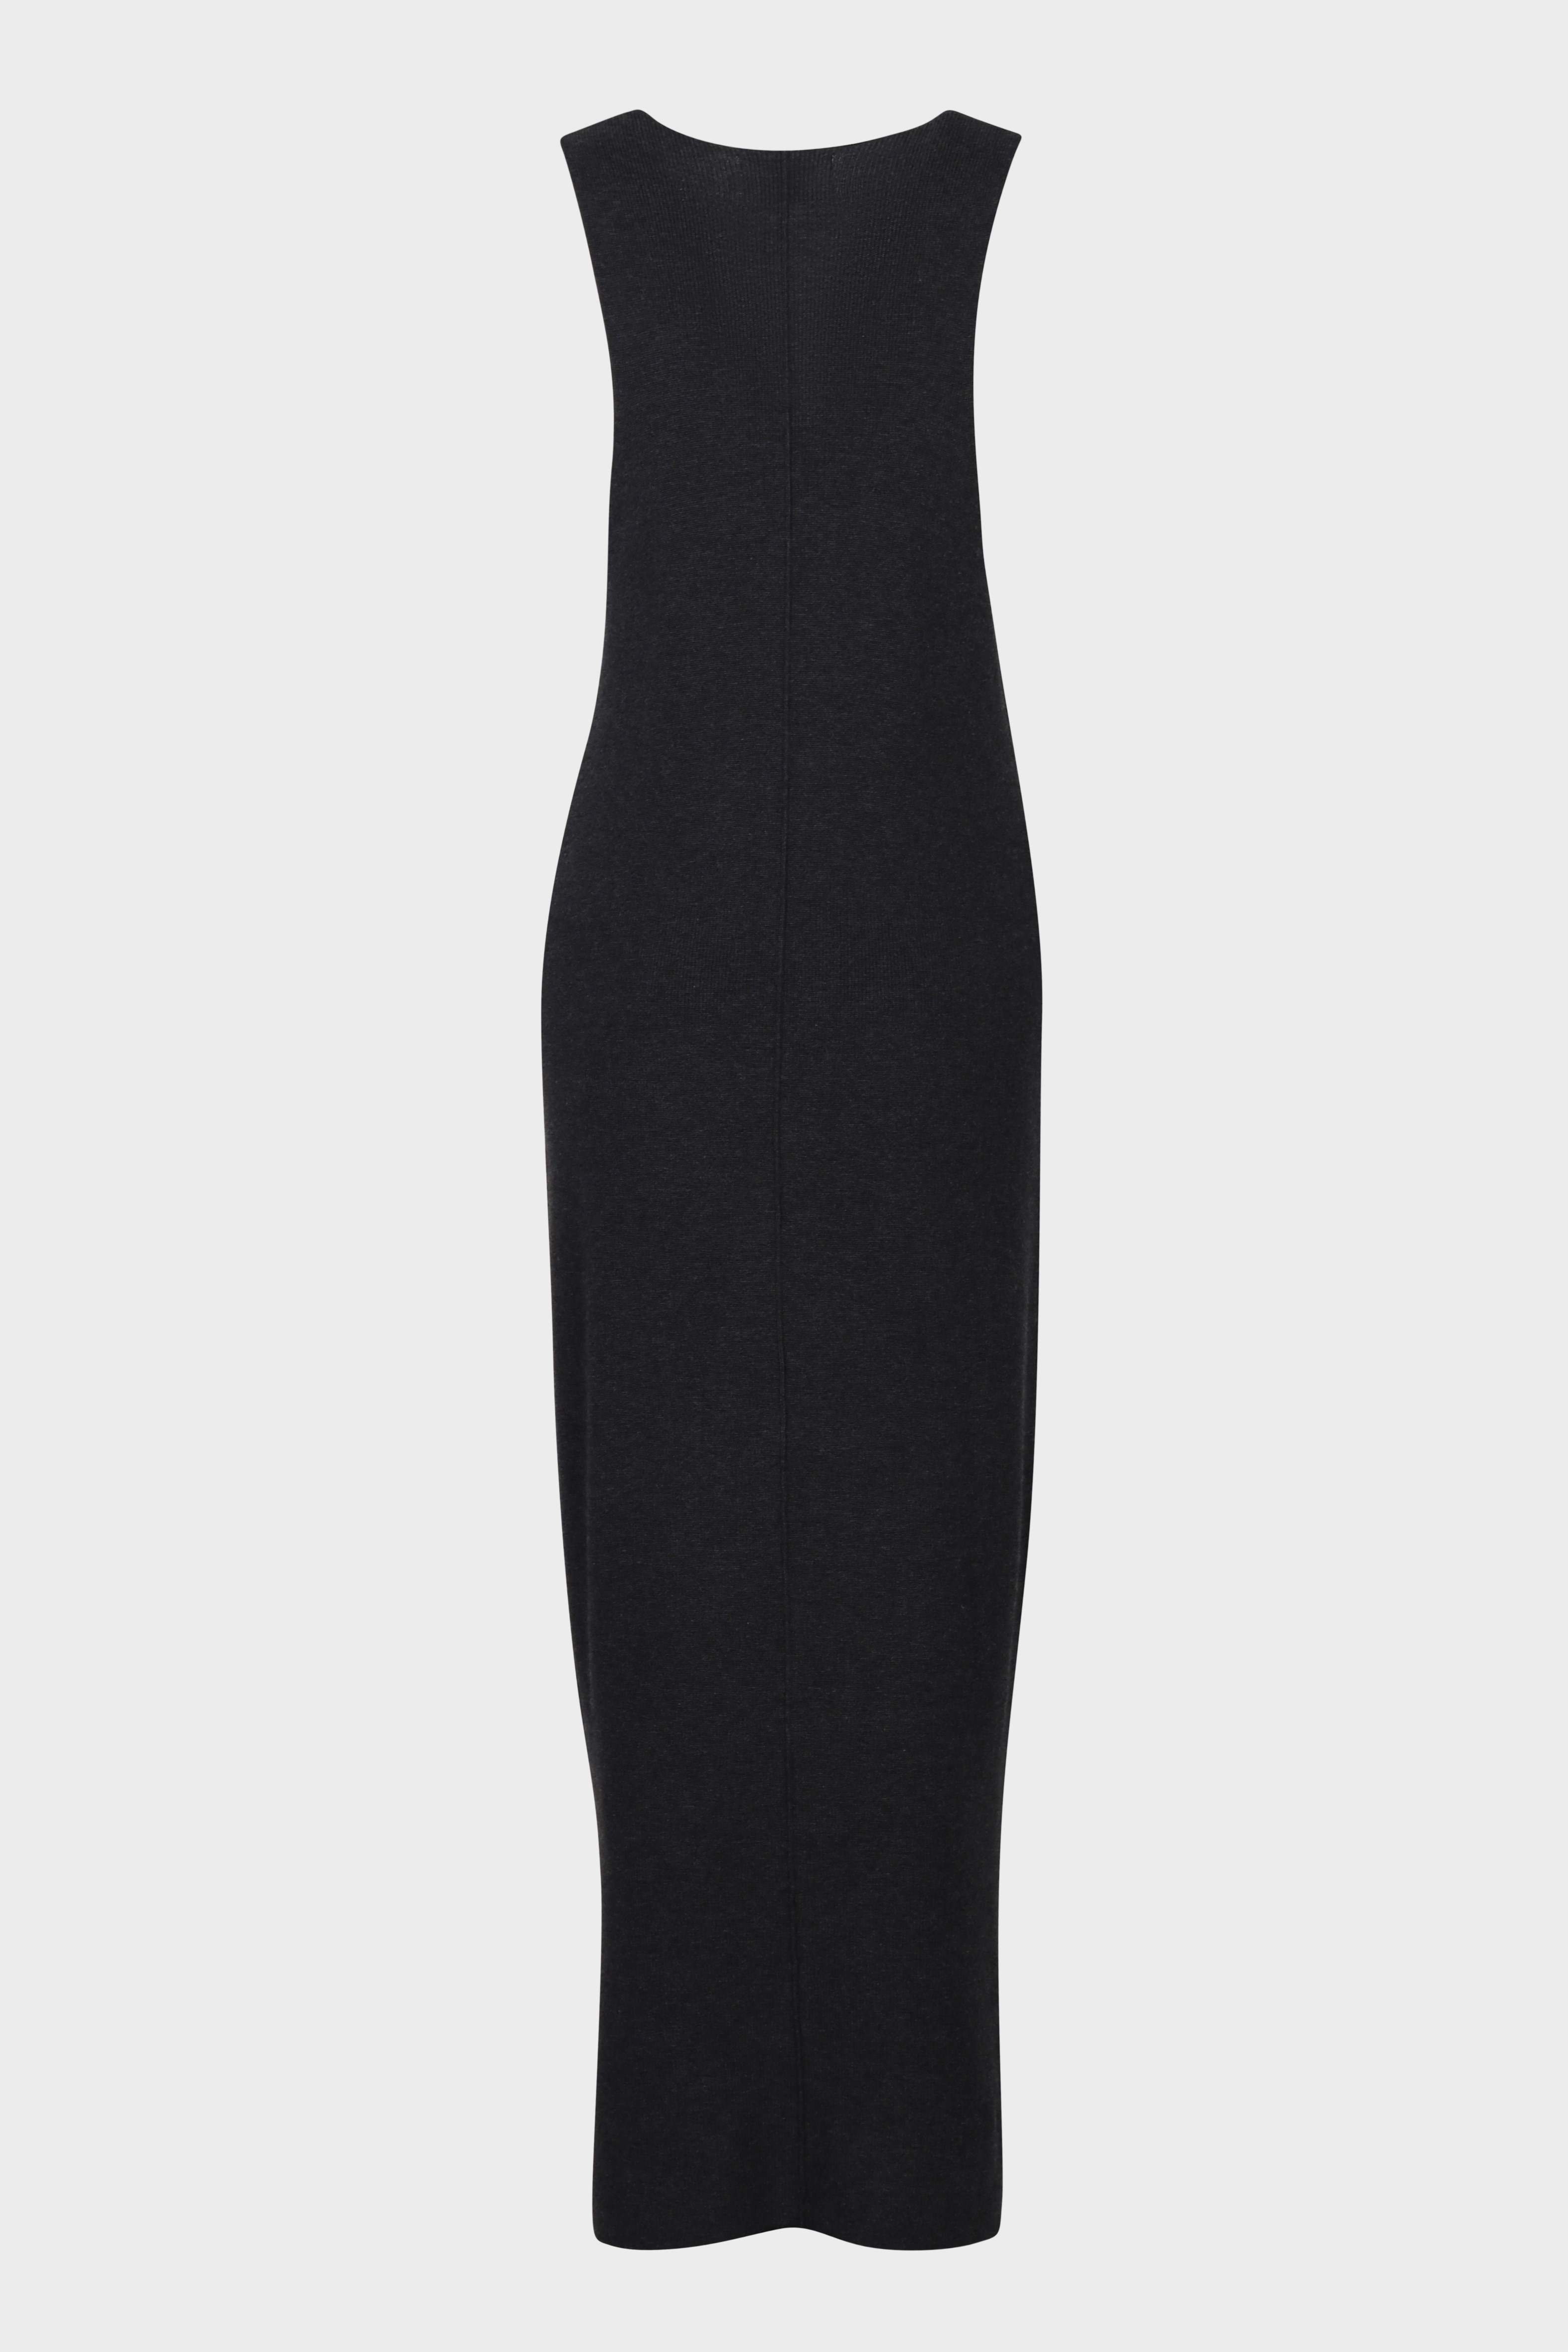 FLONA Cotton/ Cashmere Knit Dress in Dark Grey